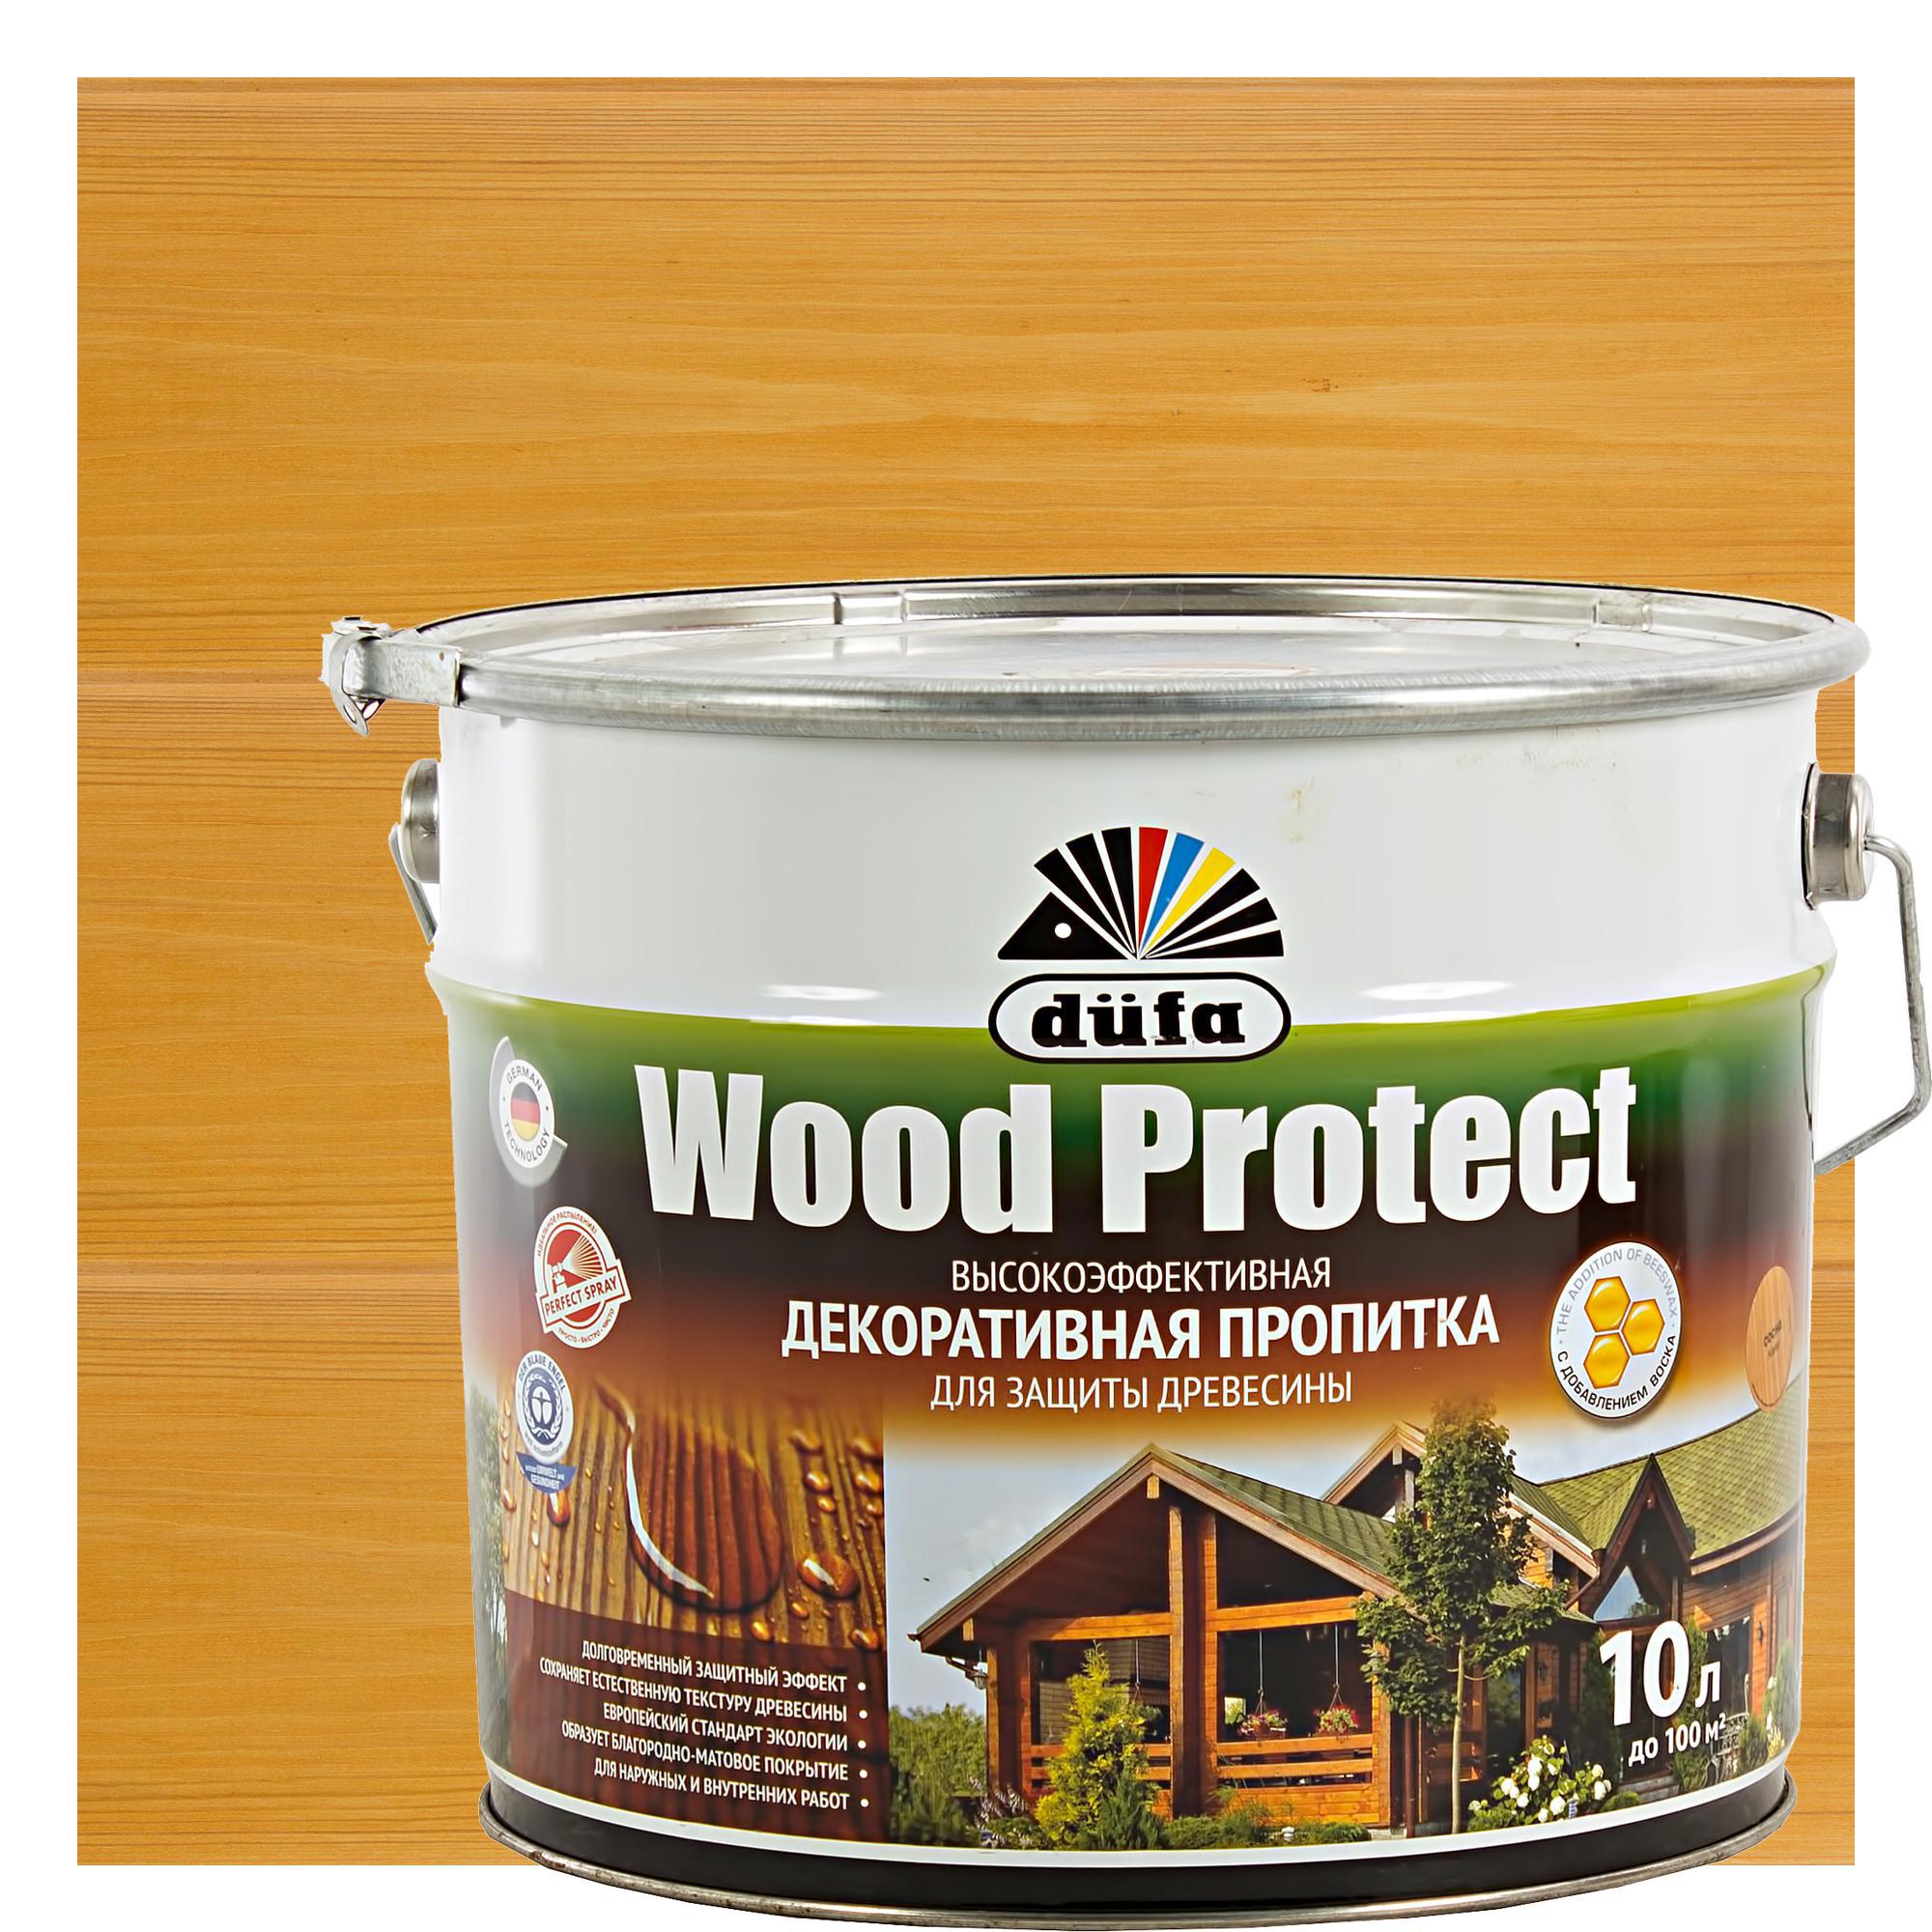 14724499 Антисептик Wood Protect цвет сосна 10 л STLM-0005074 DUFA